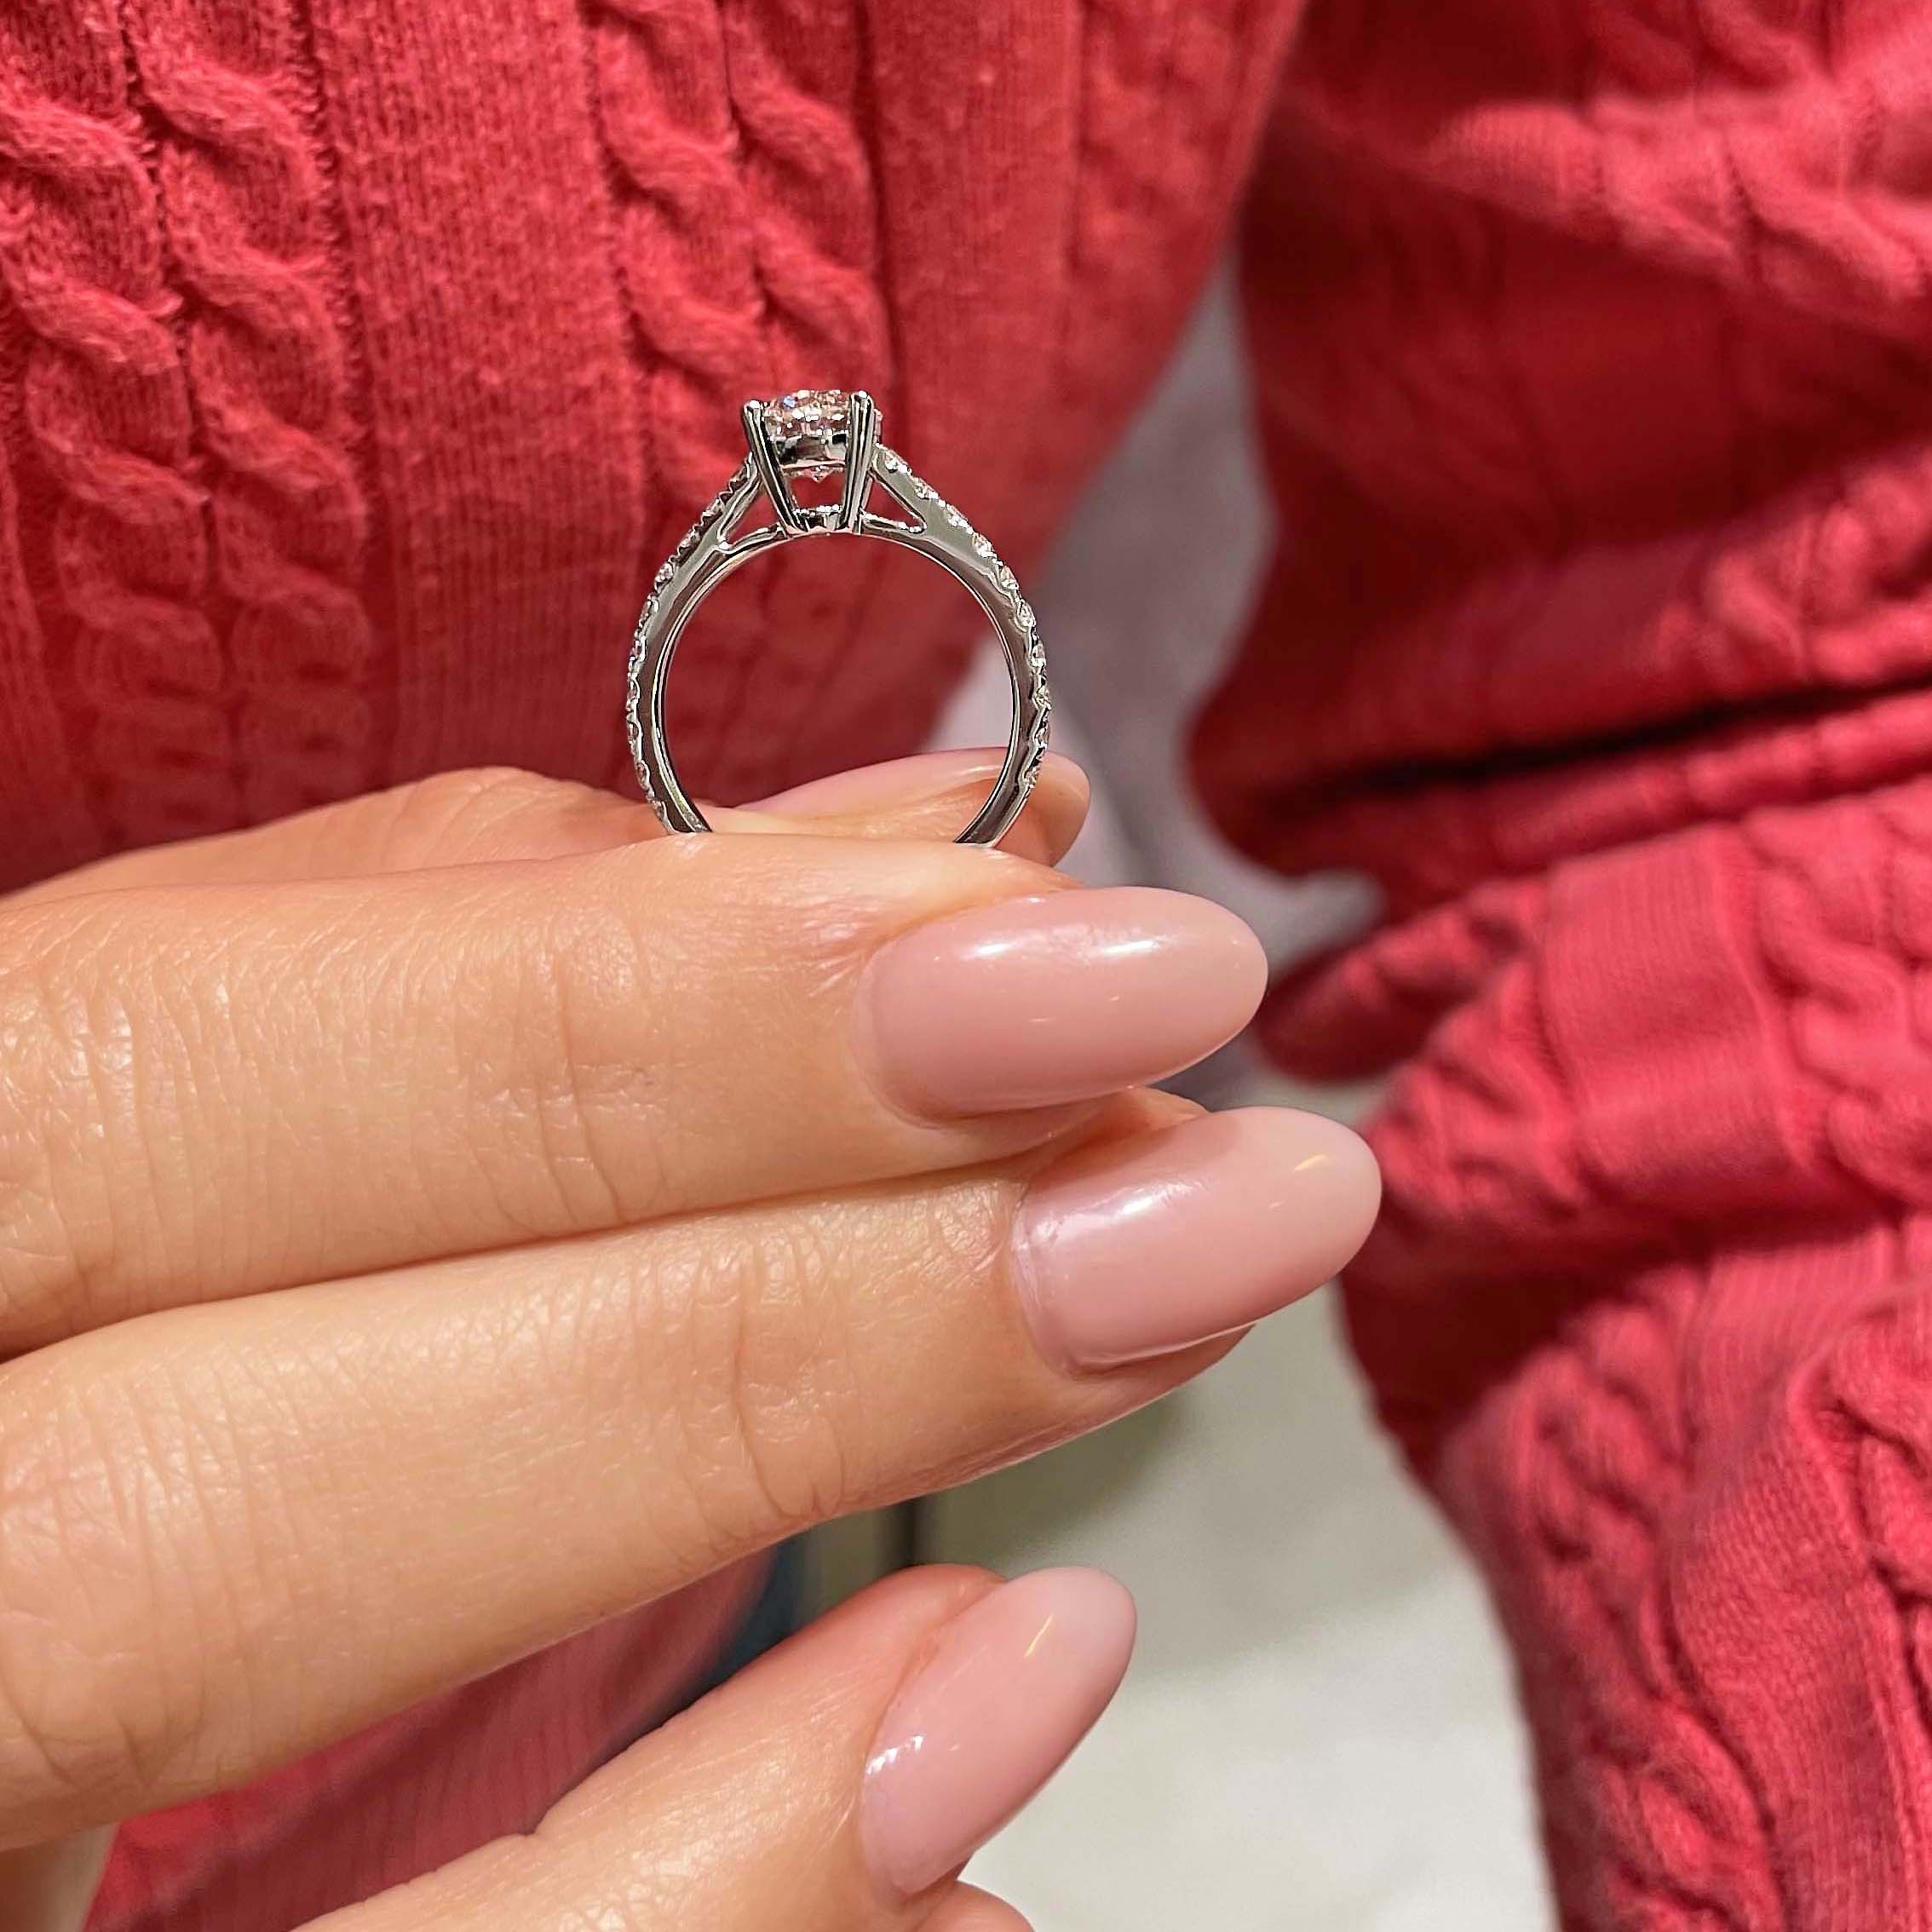 Aria Diamond Engagement Ring   (1 Carat) -18K White Gold